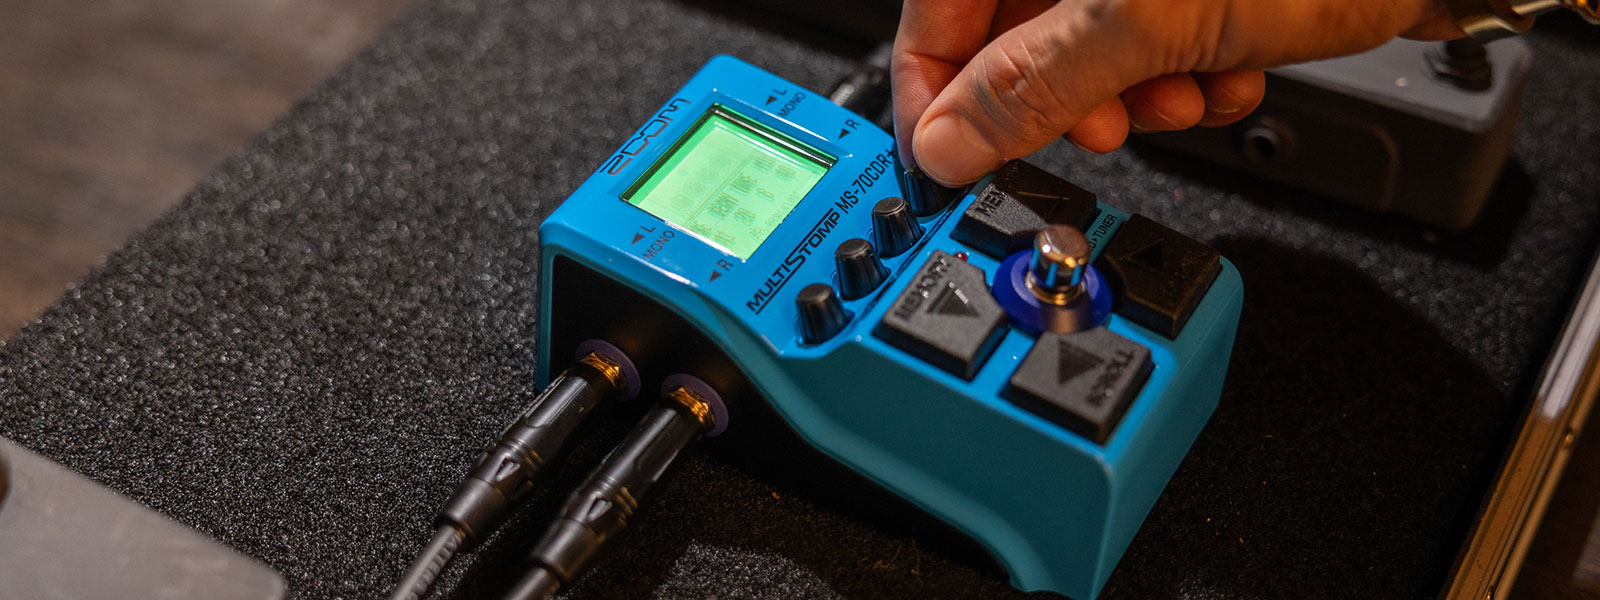 Este pedal de Zoom ofrece una extensa gama de efectos para enriquecer tu sonido, con 43 efectos de chorus y modulación, 29 tipos de delays, y 33 reverberaciones de calidad de estudio, así como 44 dinámicas y filtros